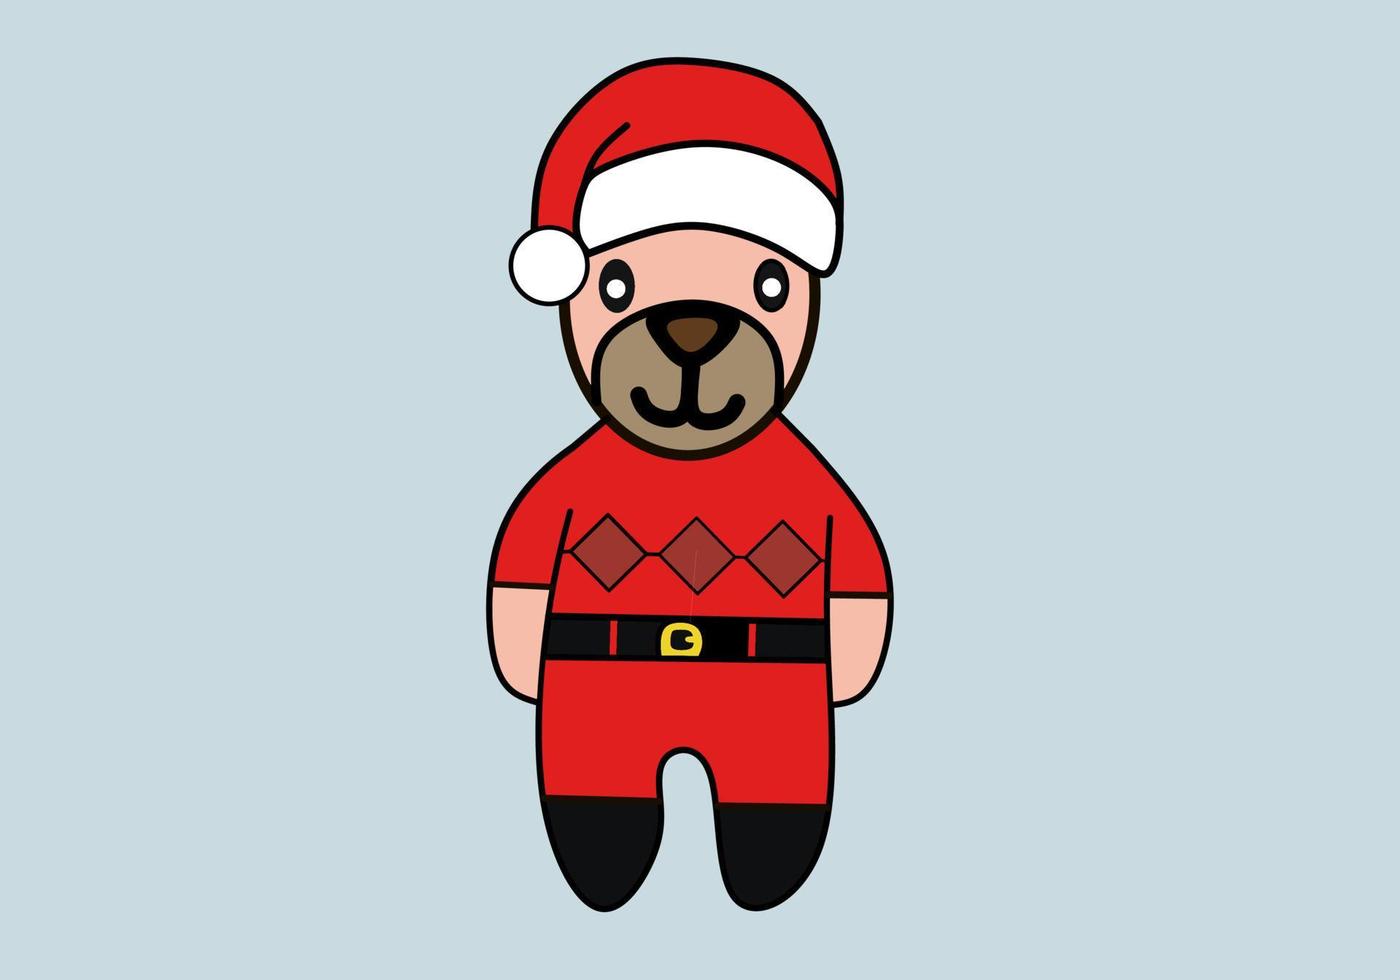 vektor seriefigur av en uppstoppad hund med en juldag tema. perfekt för julklappar